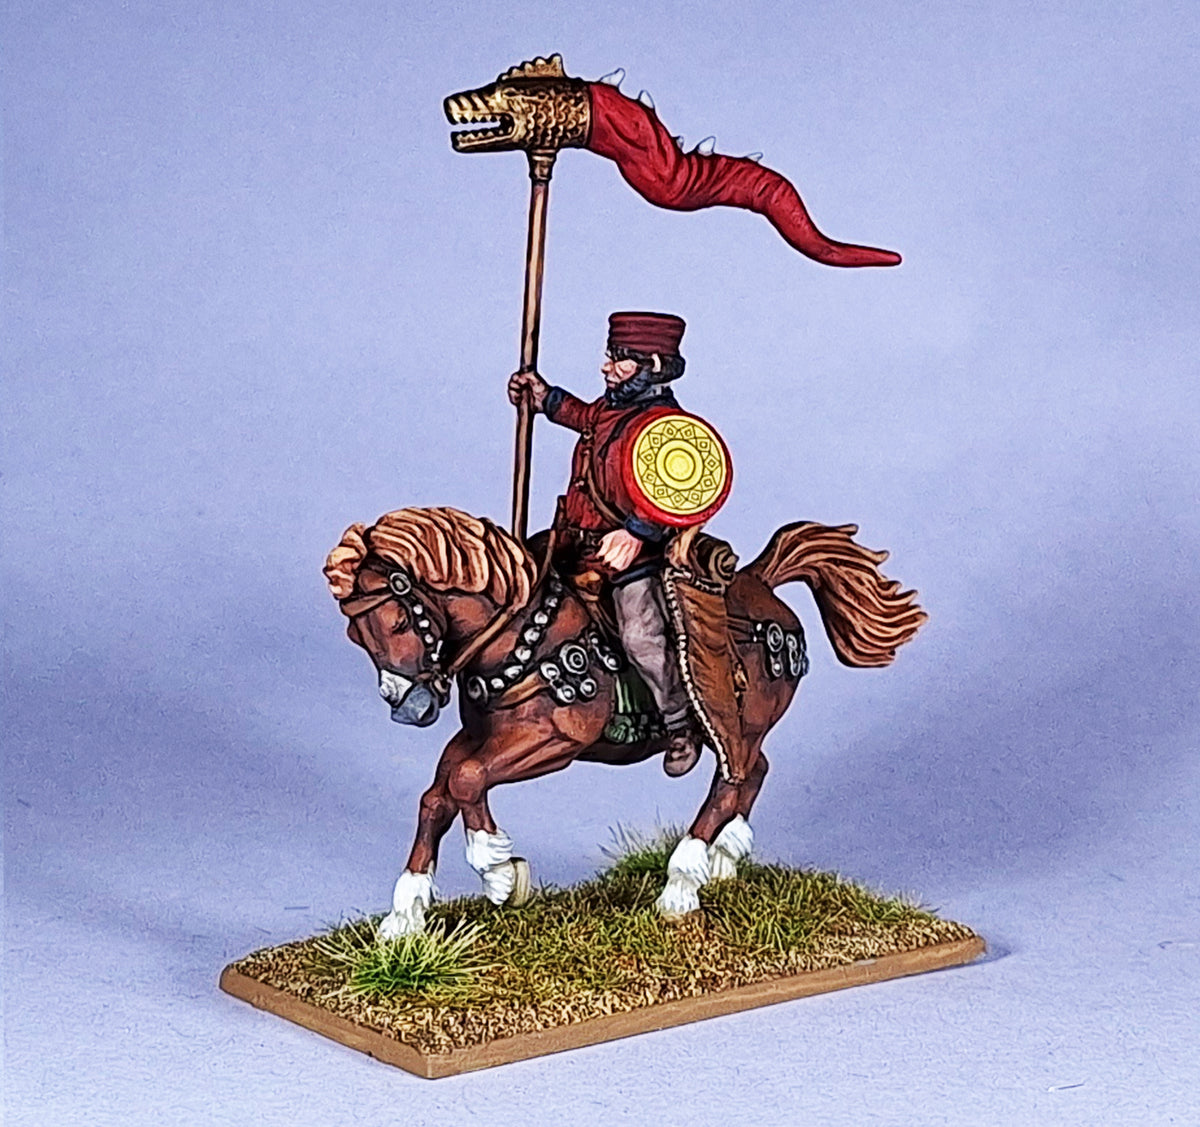 Arqueros de caballos romanos tardíos